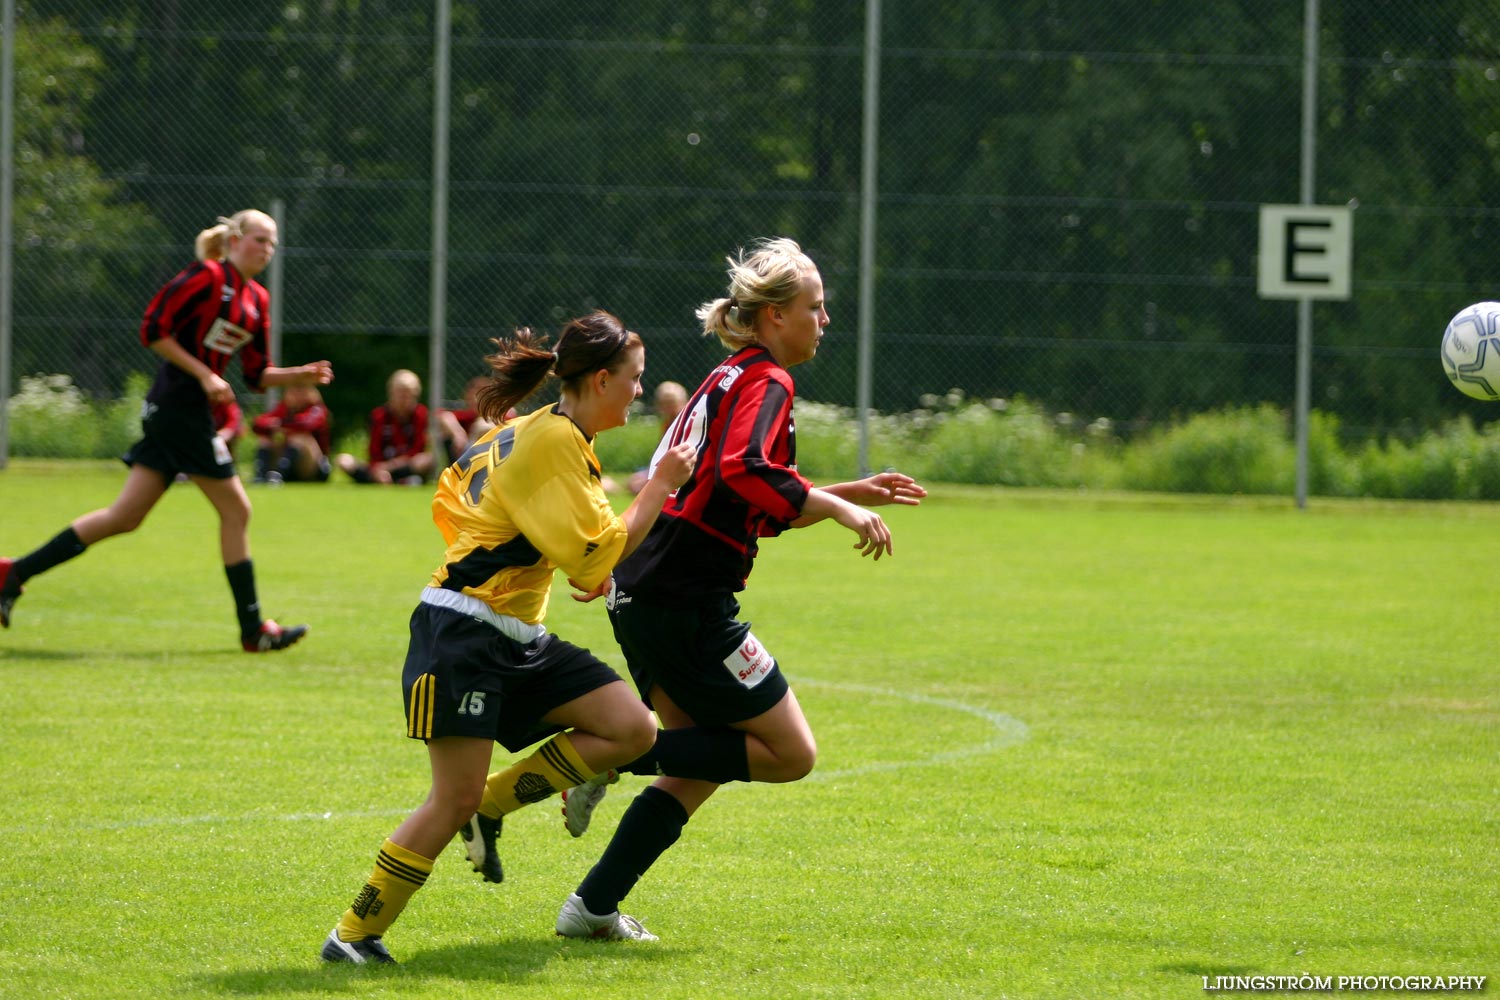 Skadevi Cup 2005 Lördag,mix,Lillegårdens IP,Skövde,Sverige,Fotboll,,2005,119542